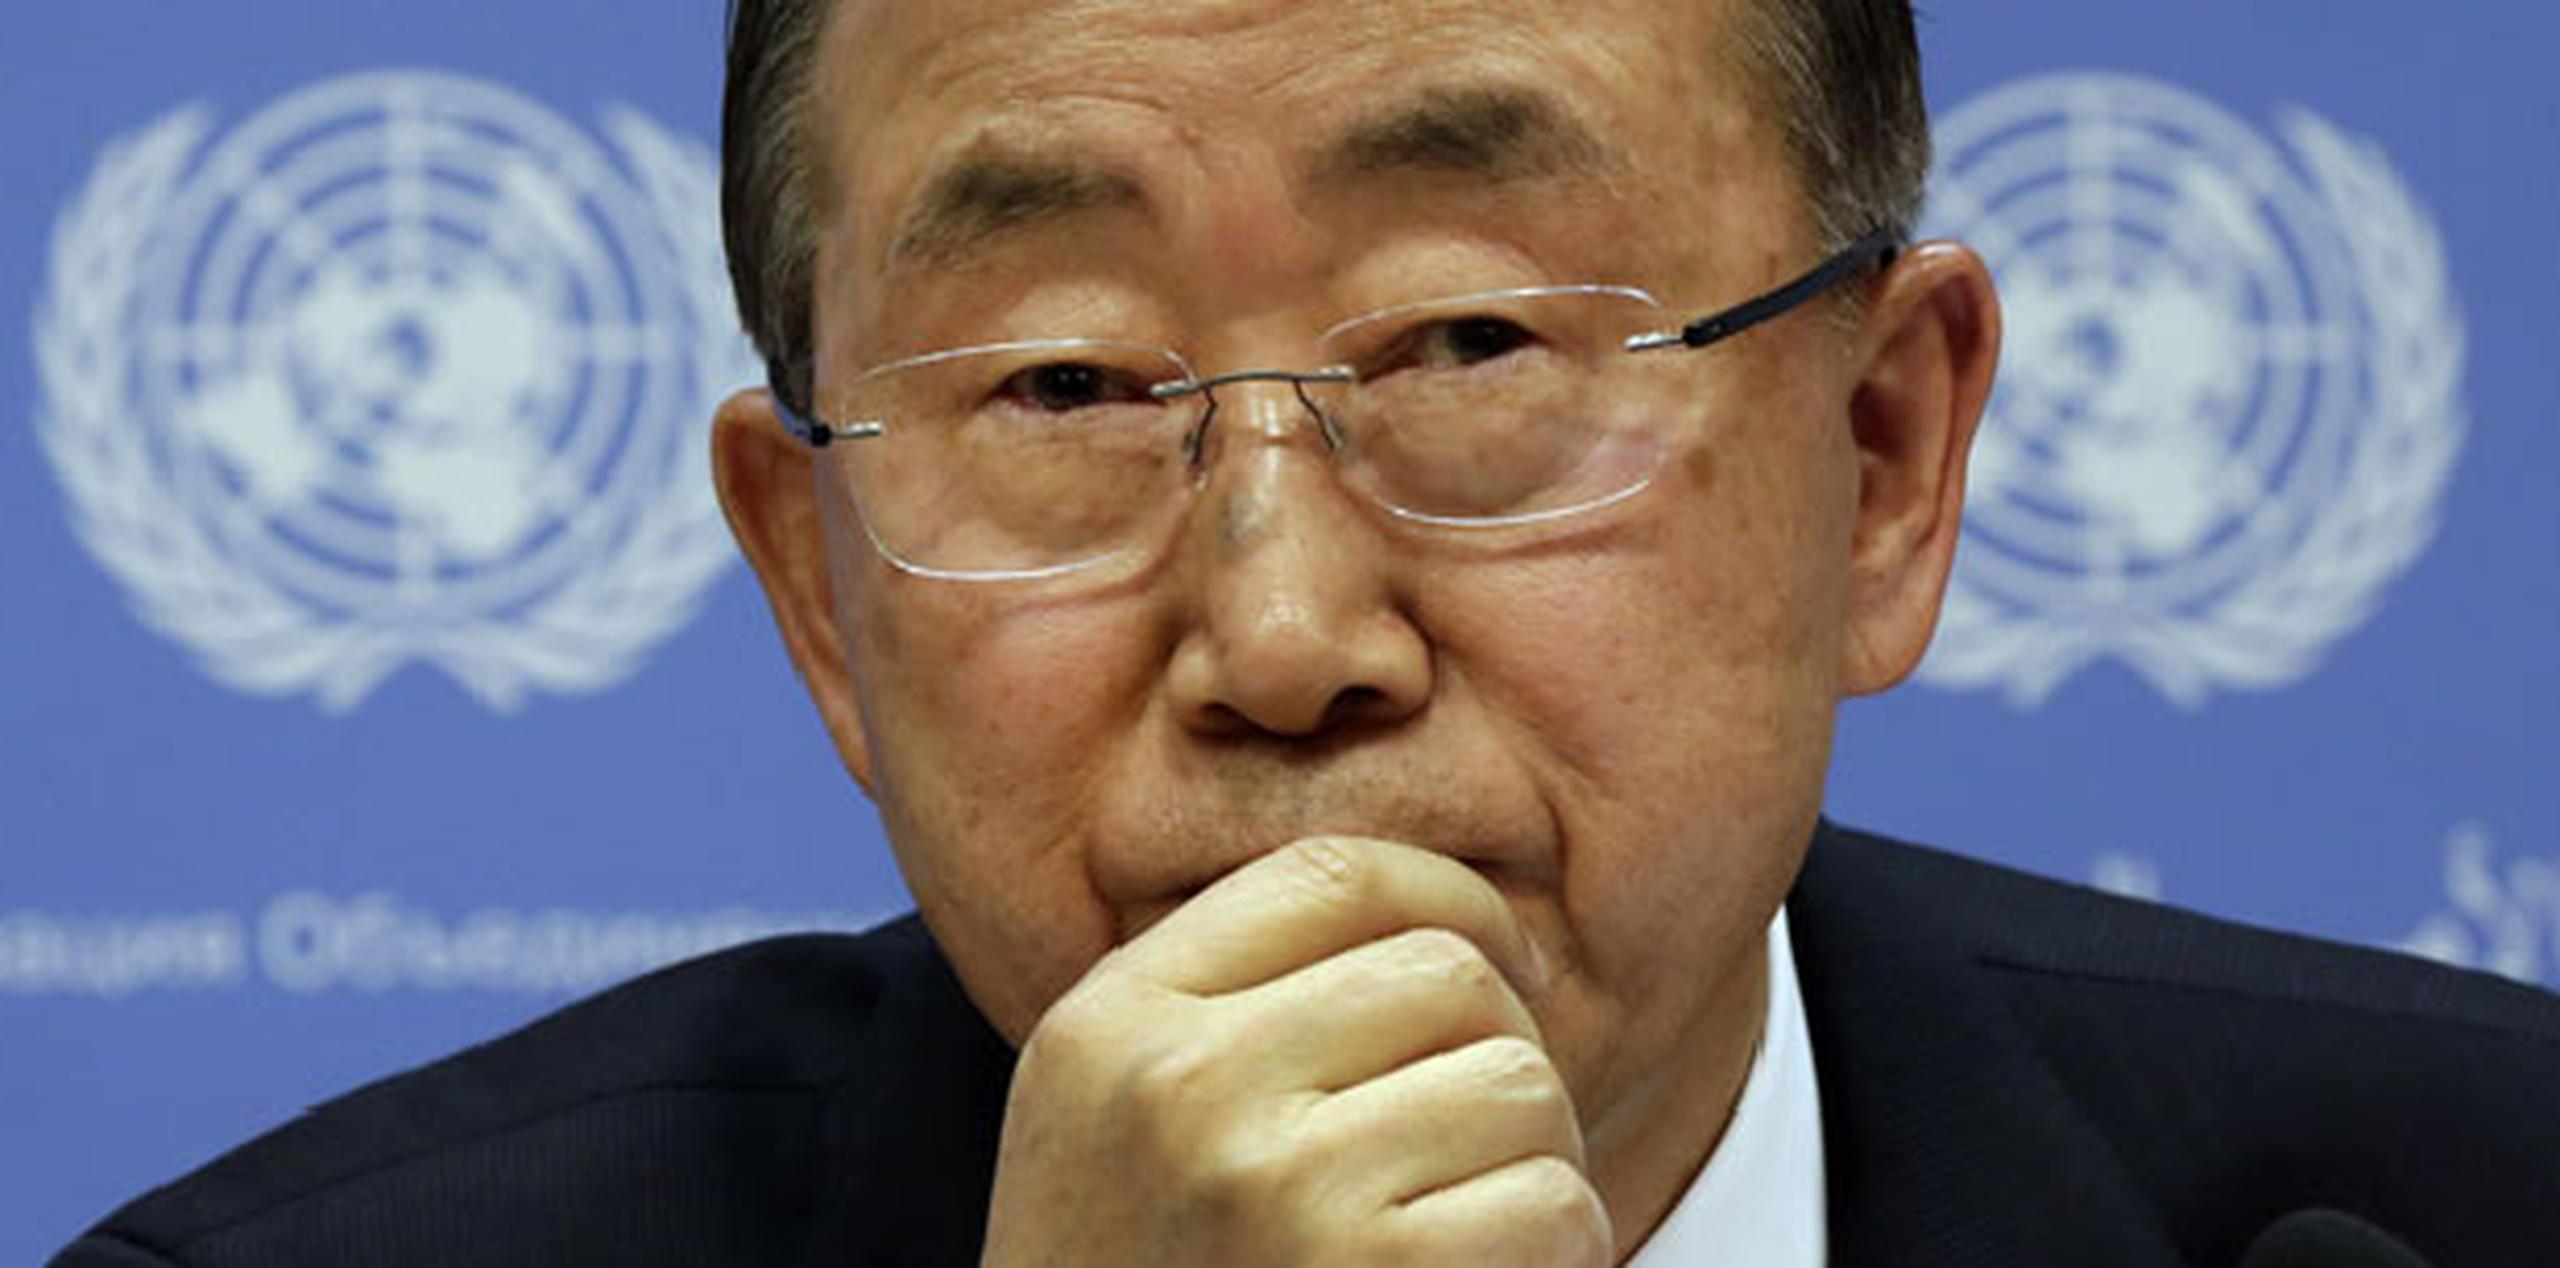 La crisis del ébola en el África occidental promete ser también uno de los platos fuertes de las reuniones multilaterales de los próximos días. En la foto, Ban Ki-moon, secretario general de la ONU. (AP)